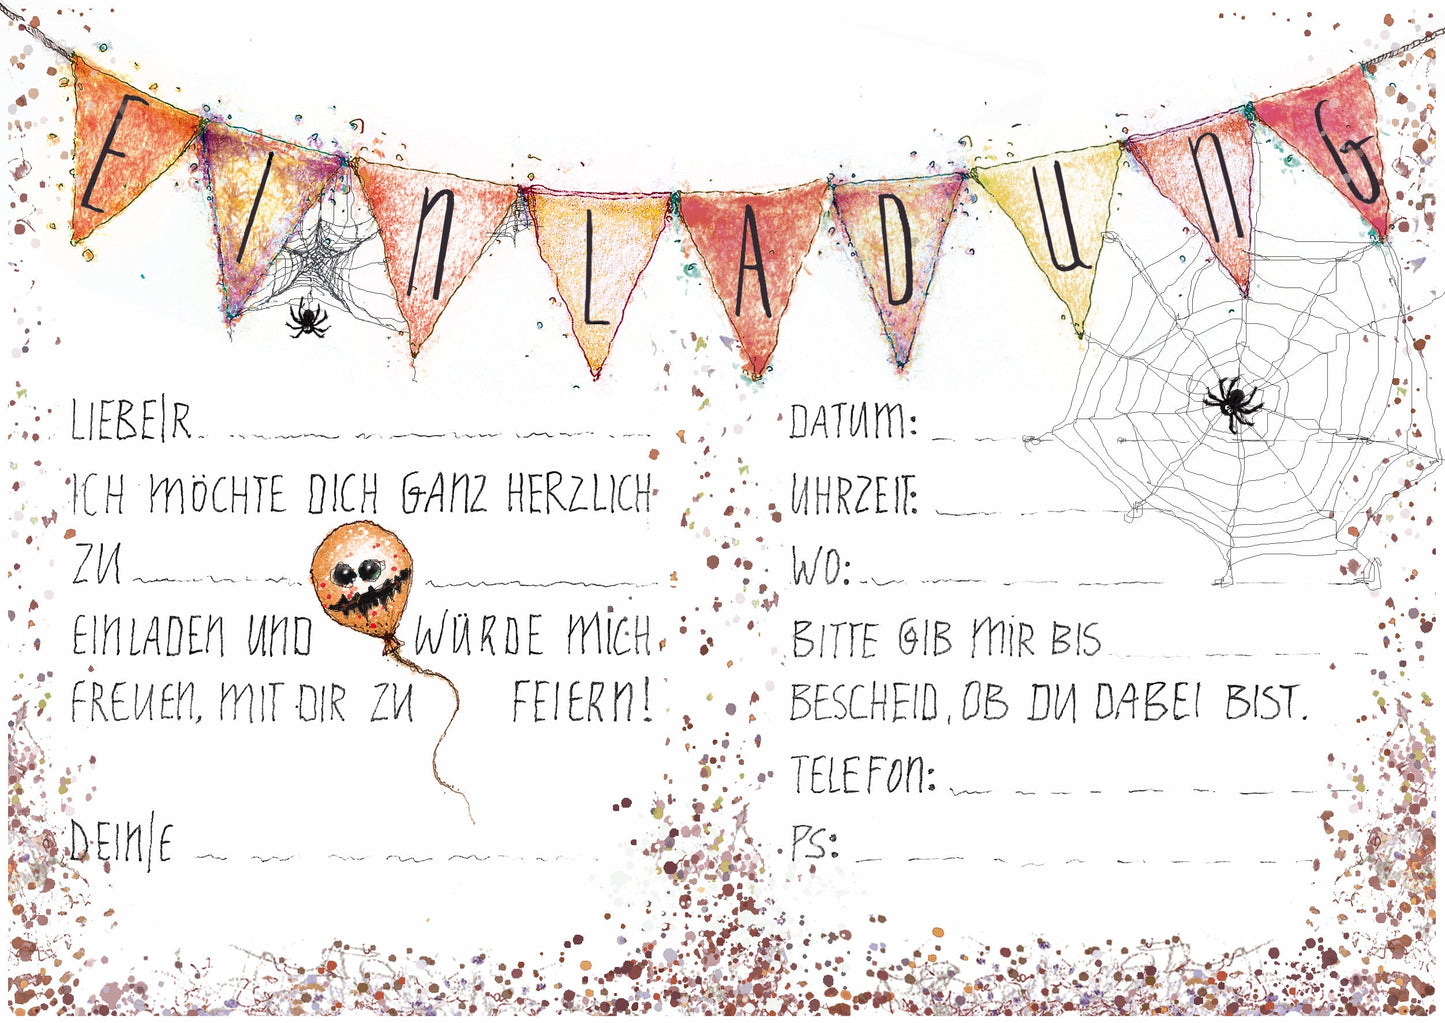 Halloweenparty Einladung | Kürbis Einladung | Pumpkin | Einladung Halloween | A6 Klappkarte mit Einladungstext